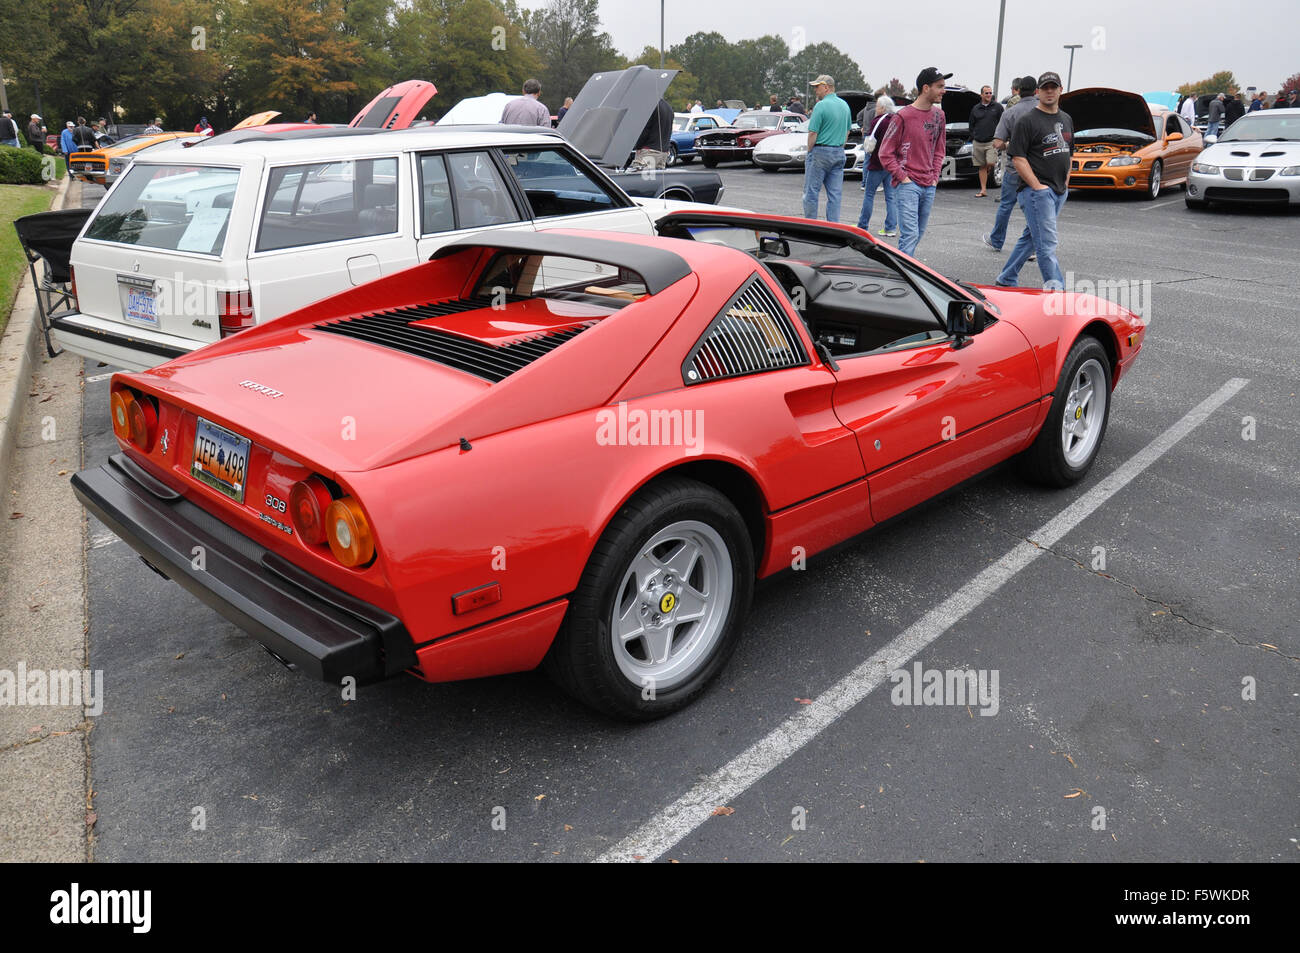 A Red Ferrari sports car at a car show. Stock Photo